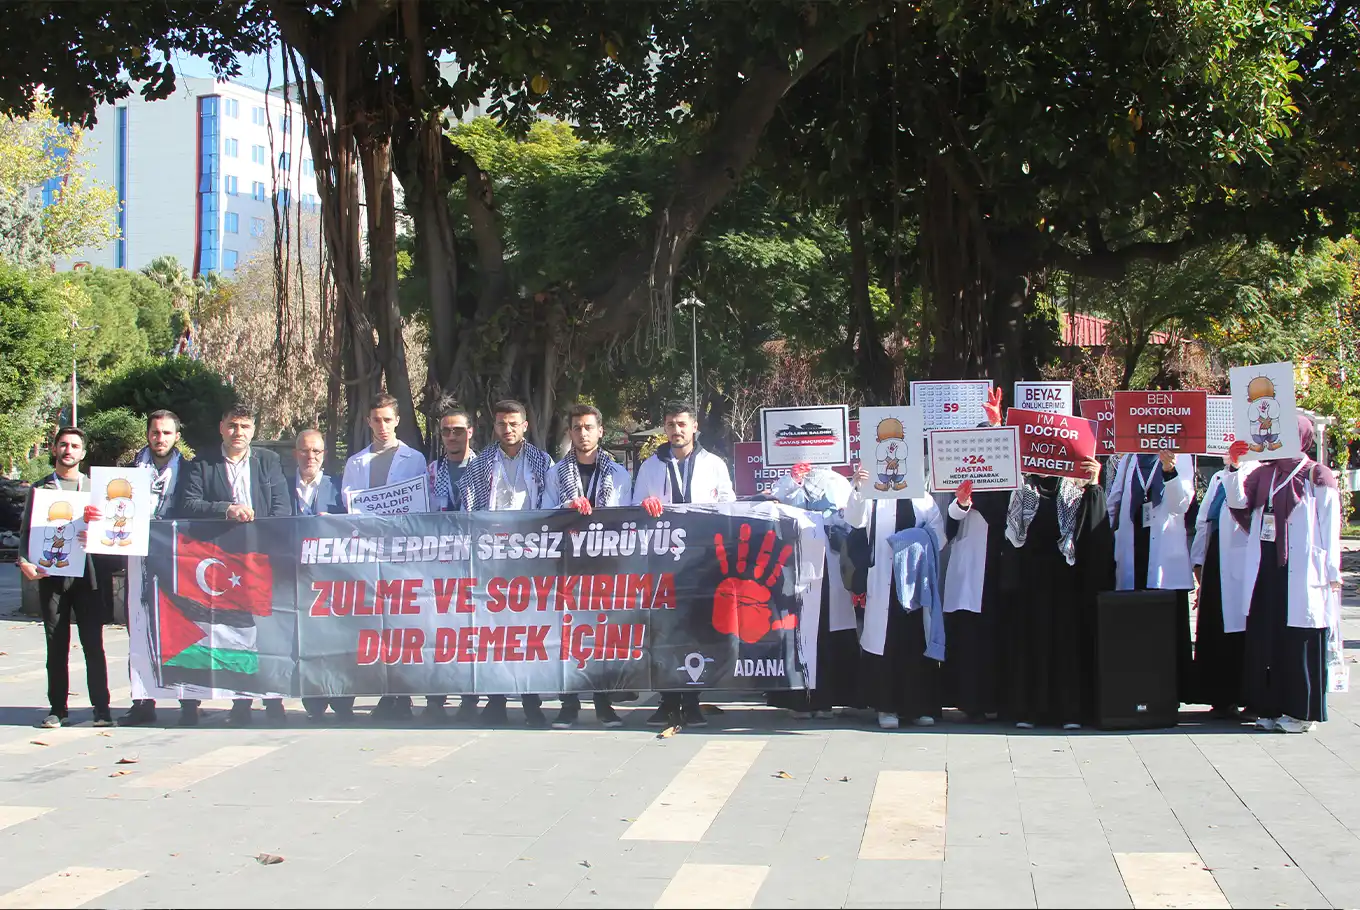 Adana'da hekimlerden Gazze için sessiz yürüyüş